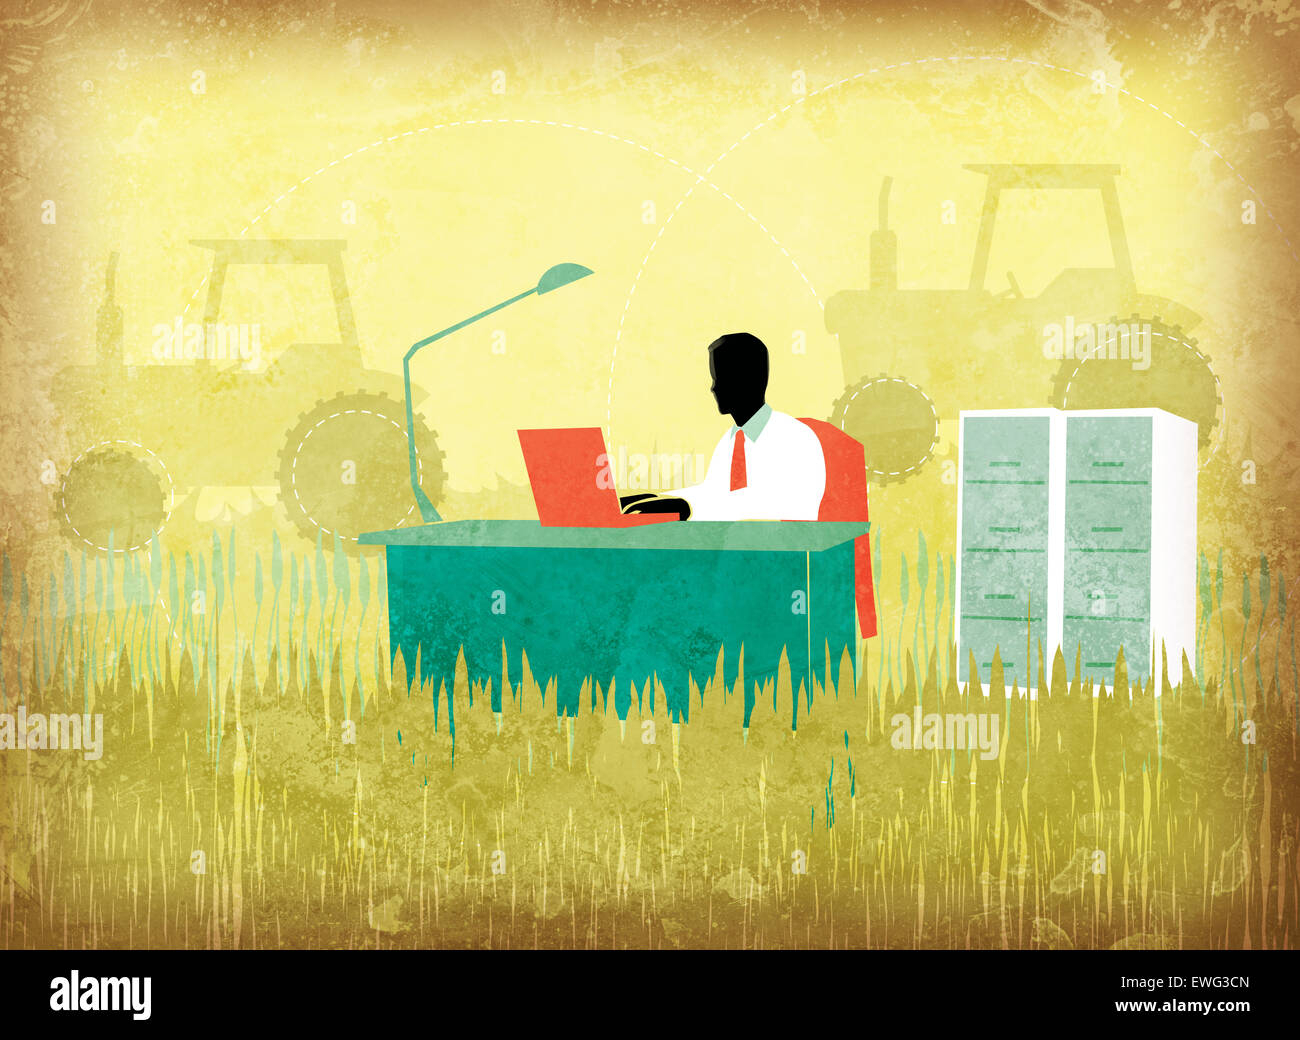 Abbildung Bild der Geschäftsmann mit Laptop im landwirtschaftlichen Bereich Stockfoto